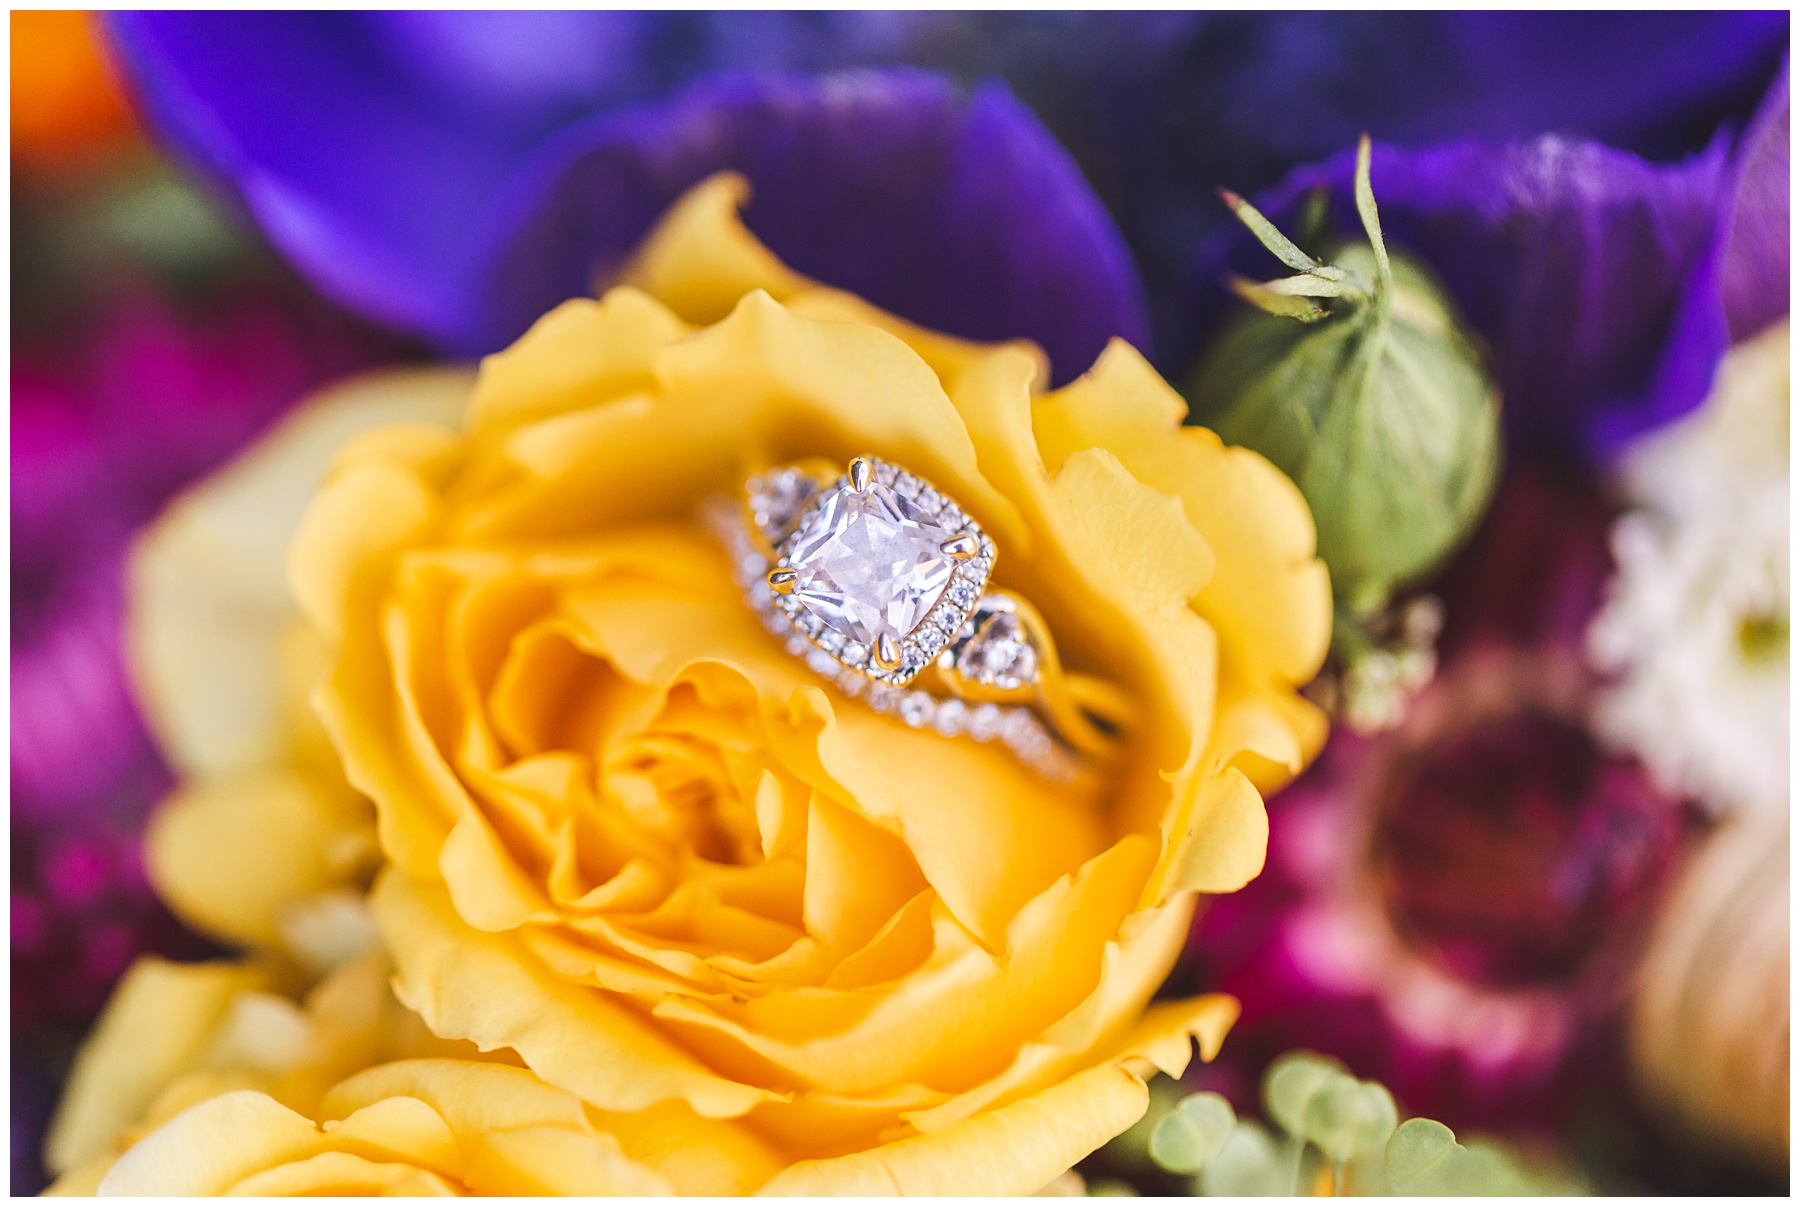 Wedding ring in yellow rose